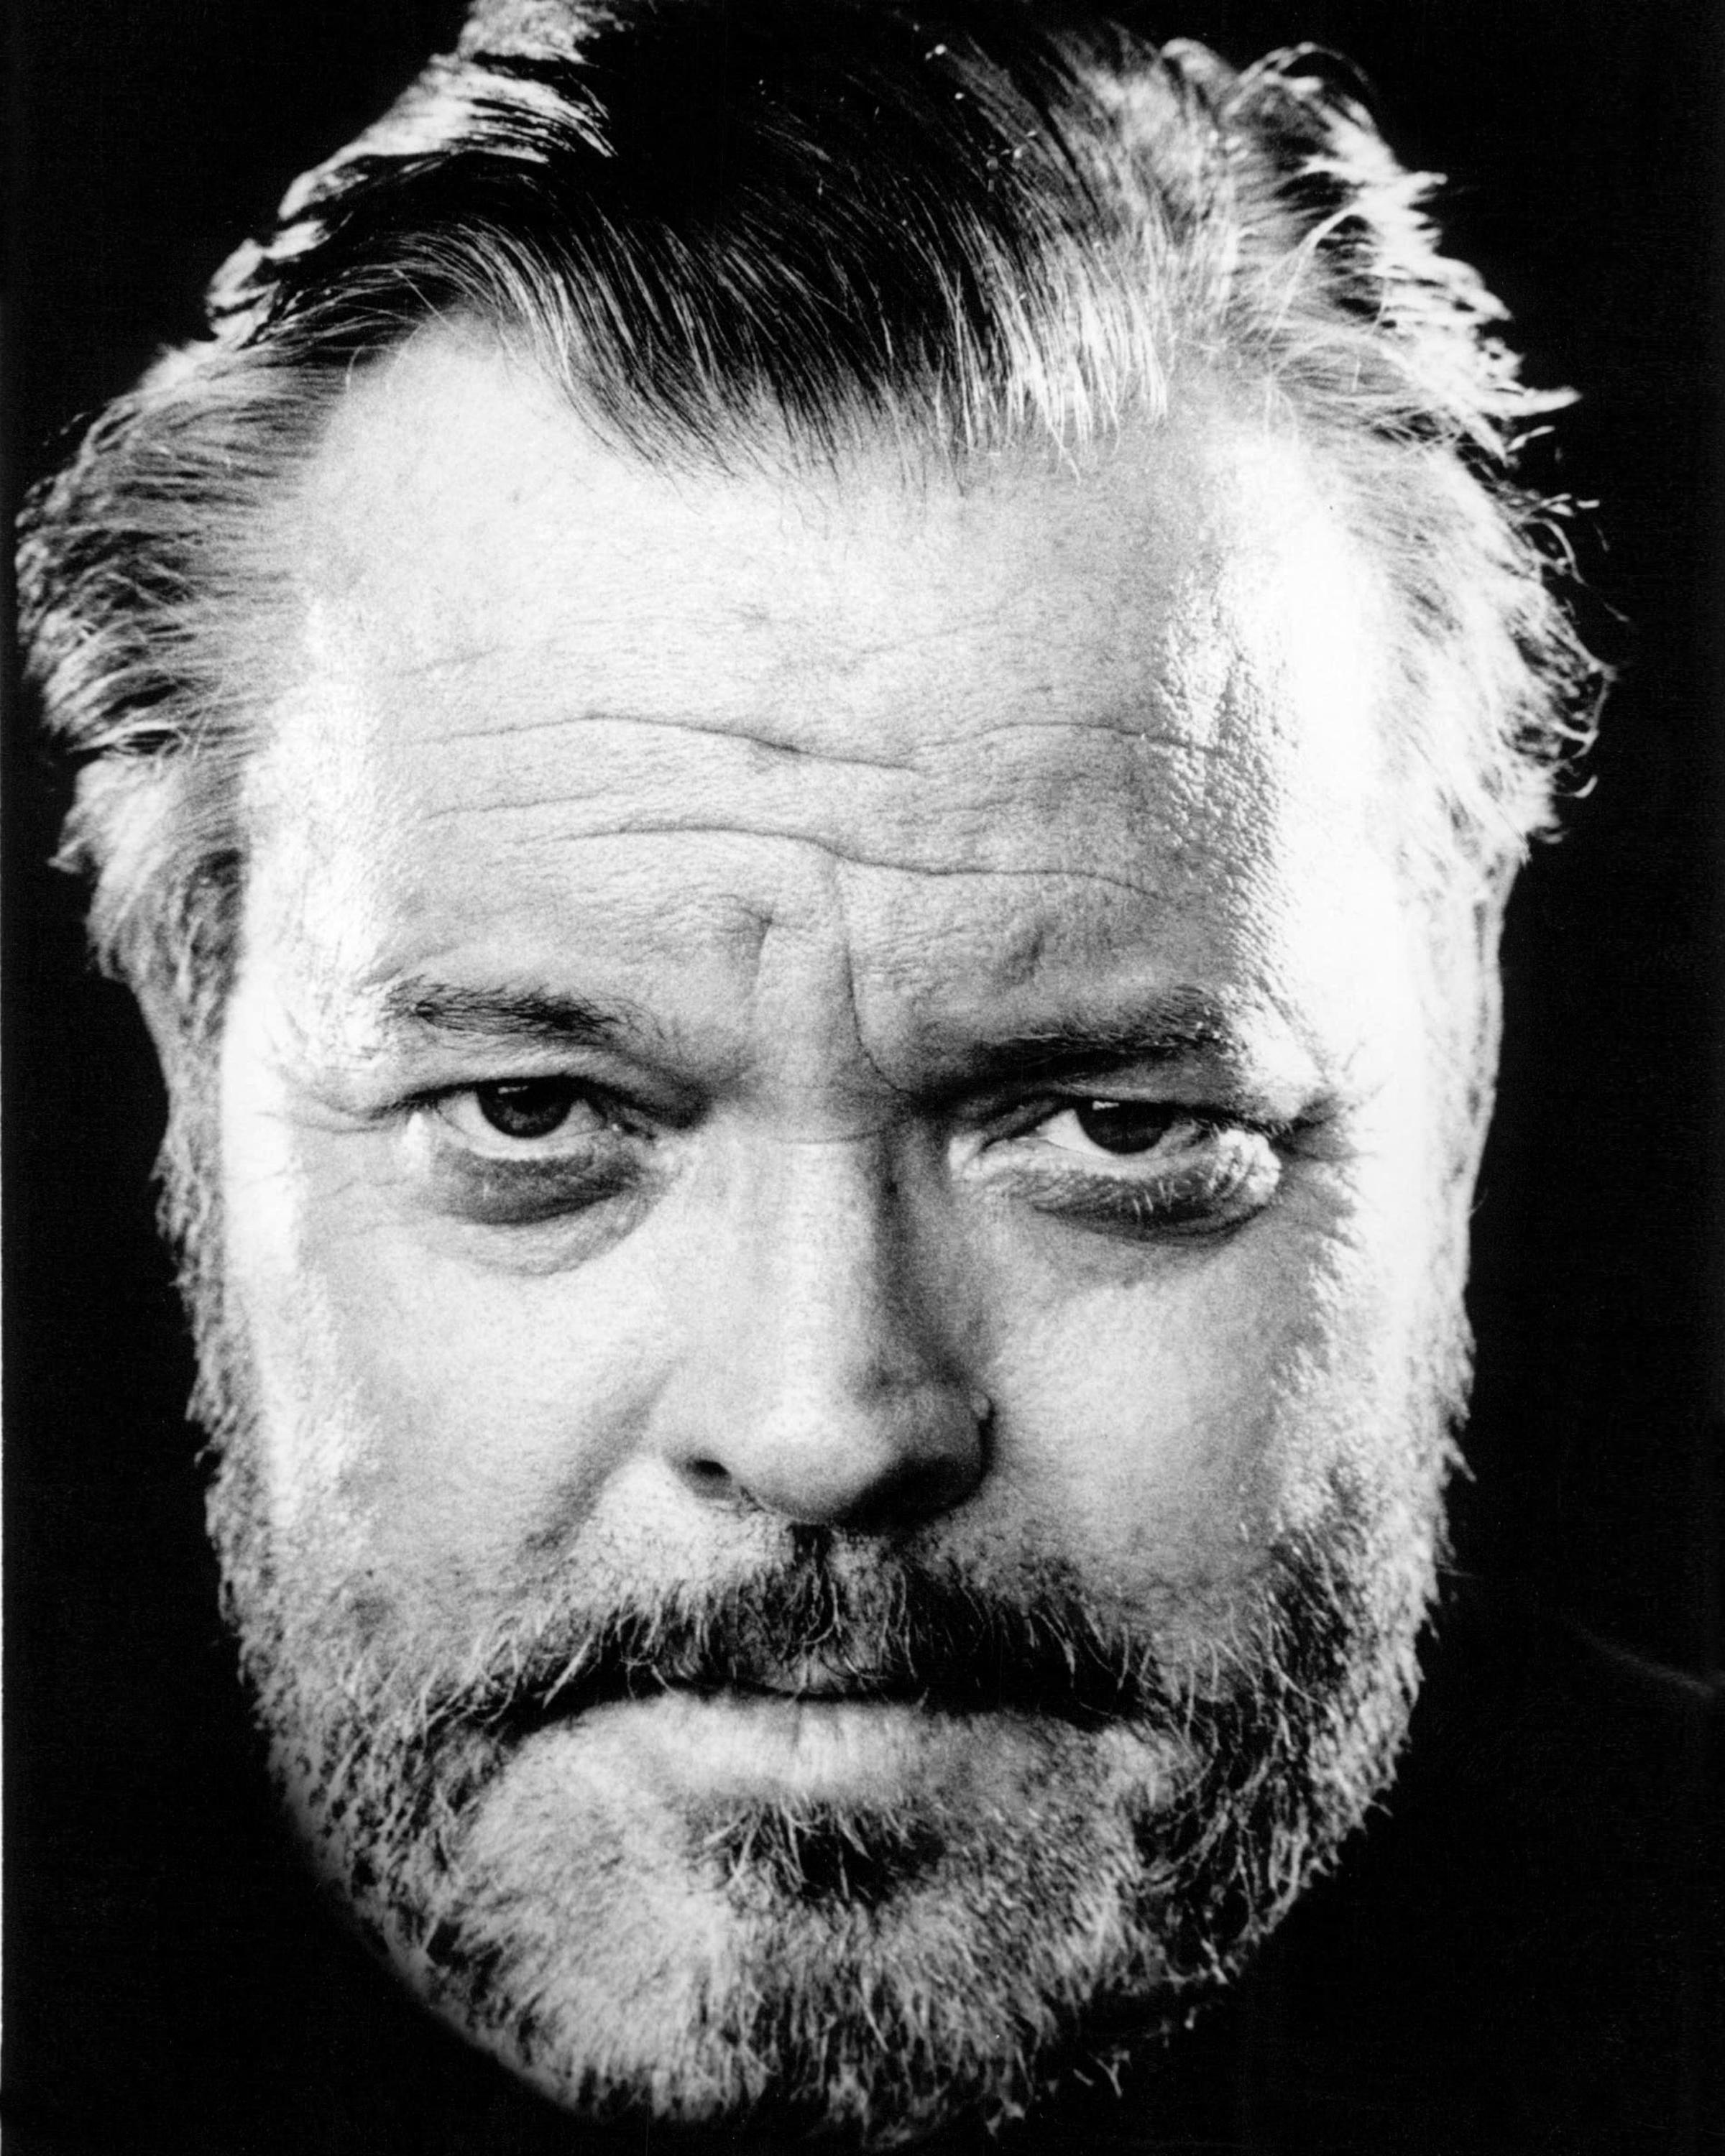 Orson Welles image